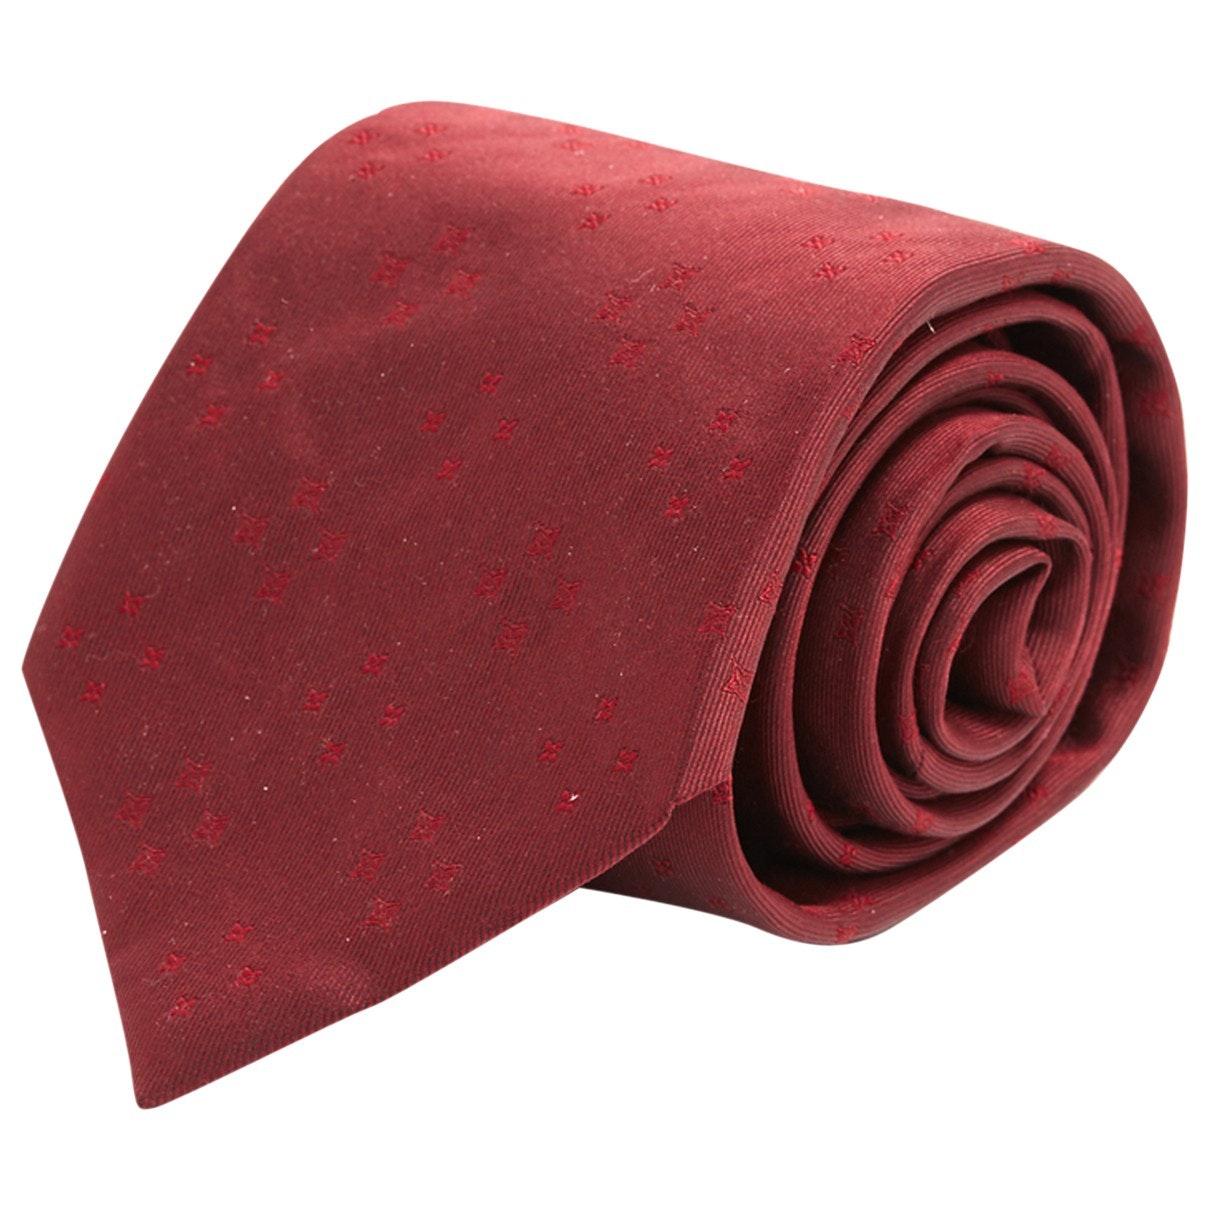 Louis Vuitton n Burgundy Silk Tie in Red for Men - Lyst